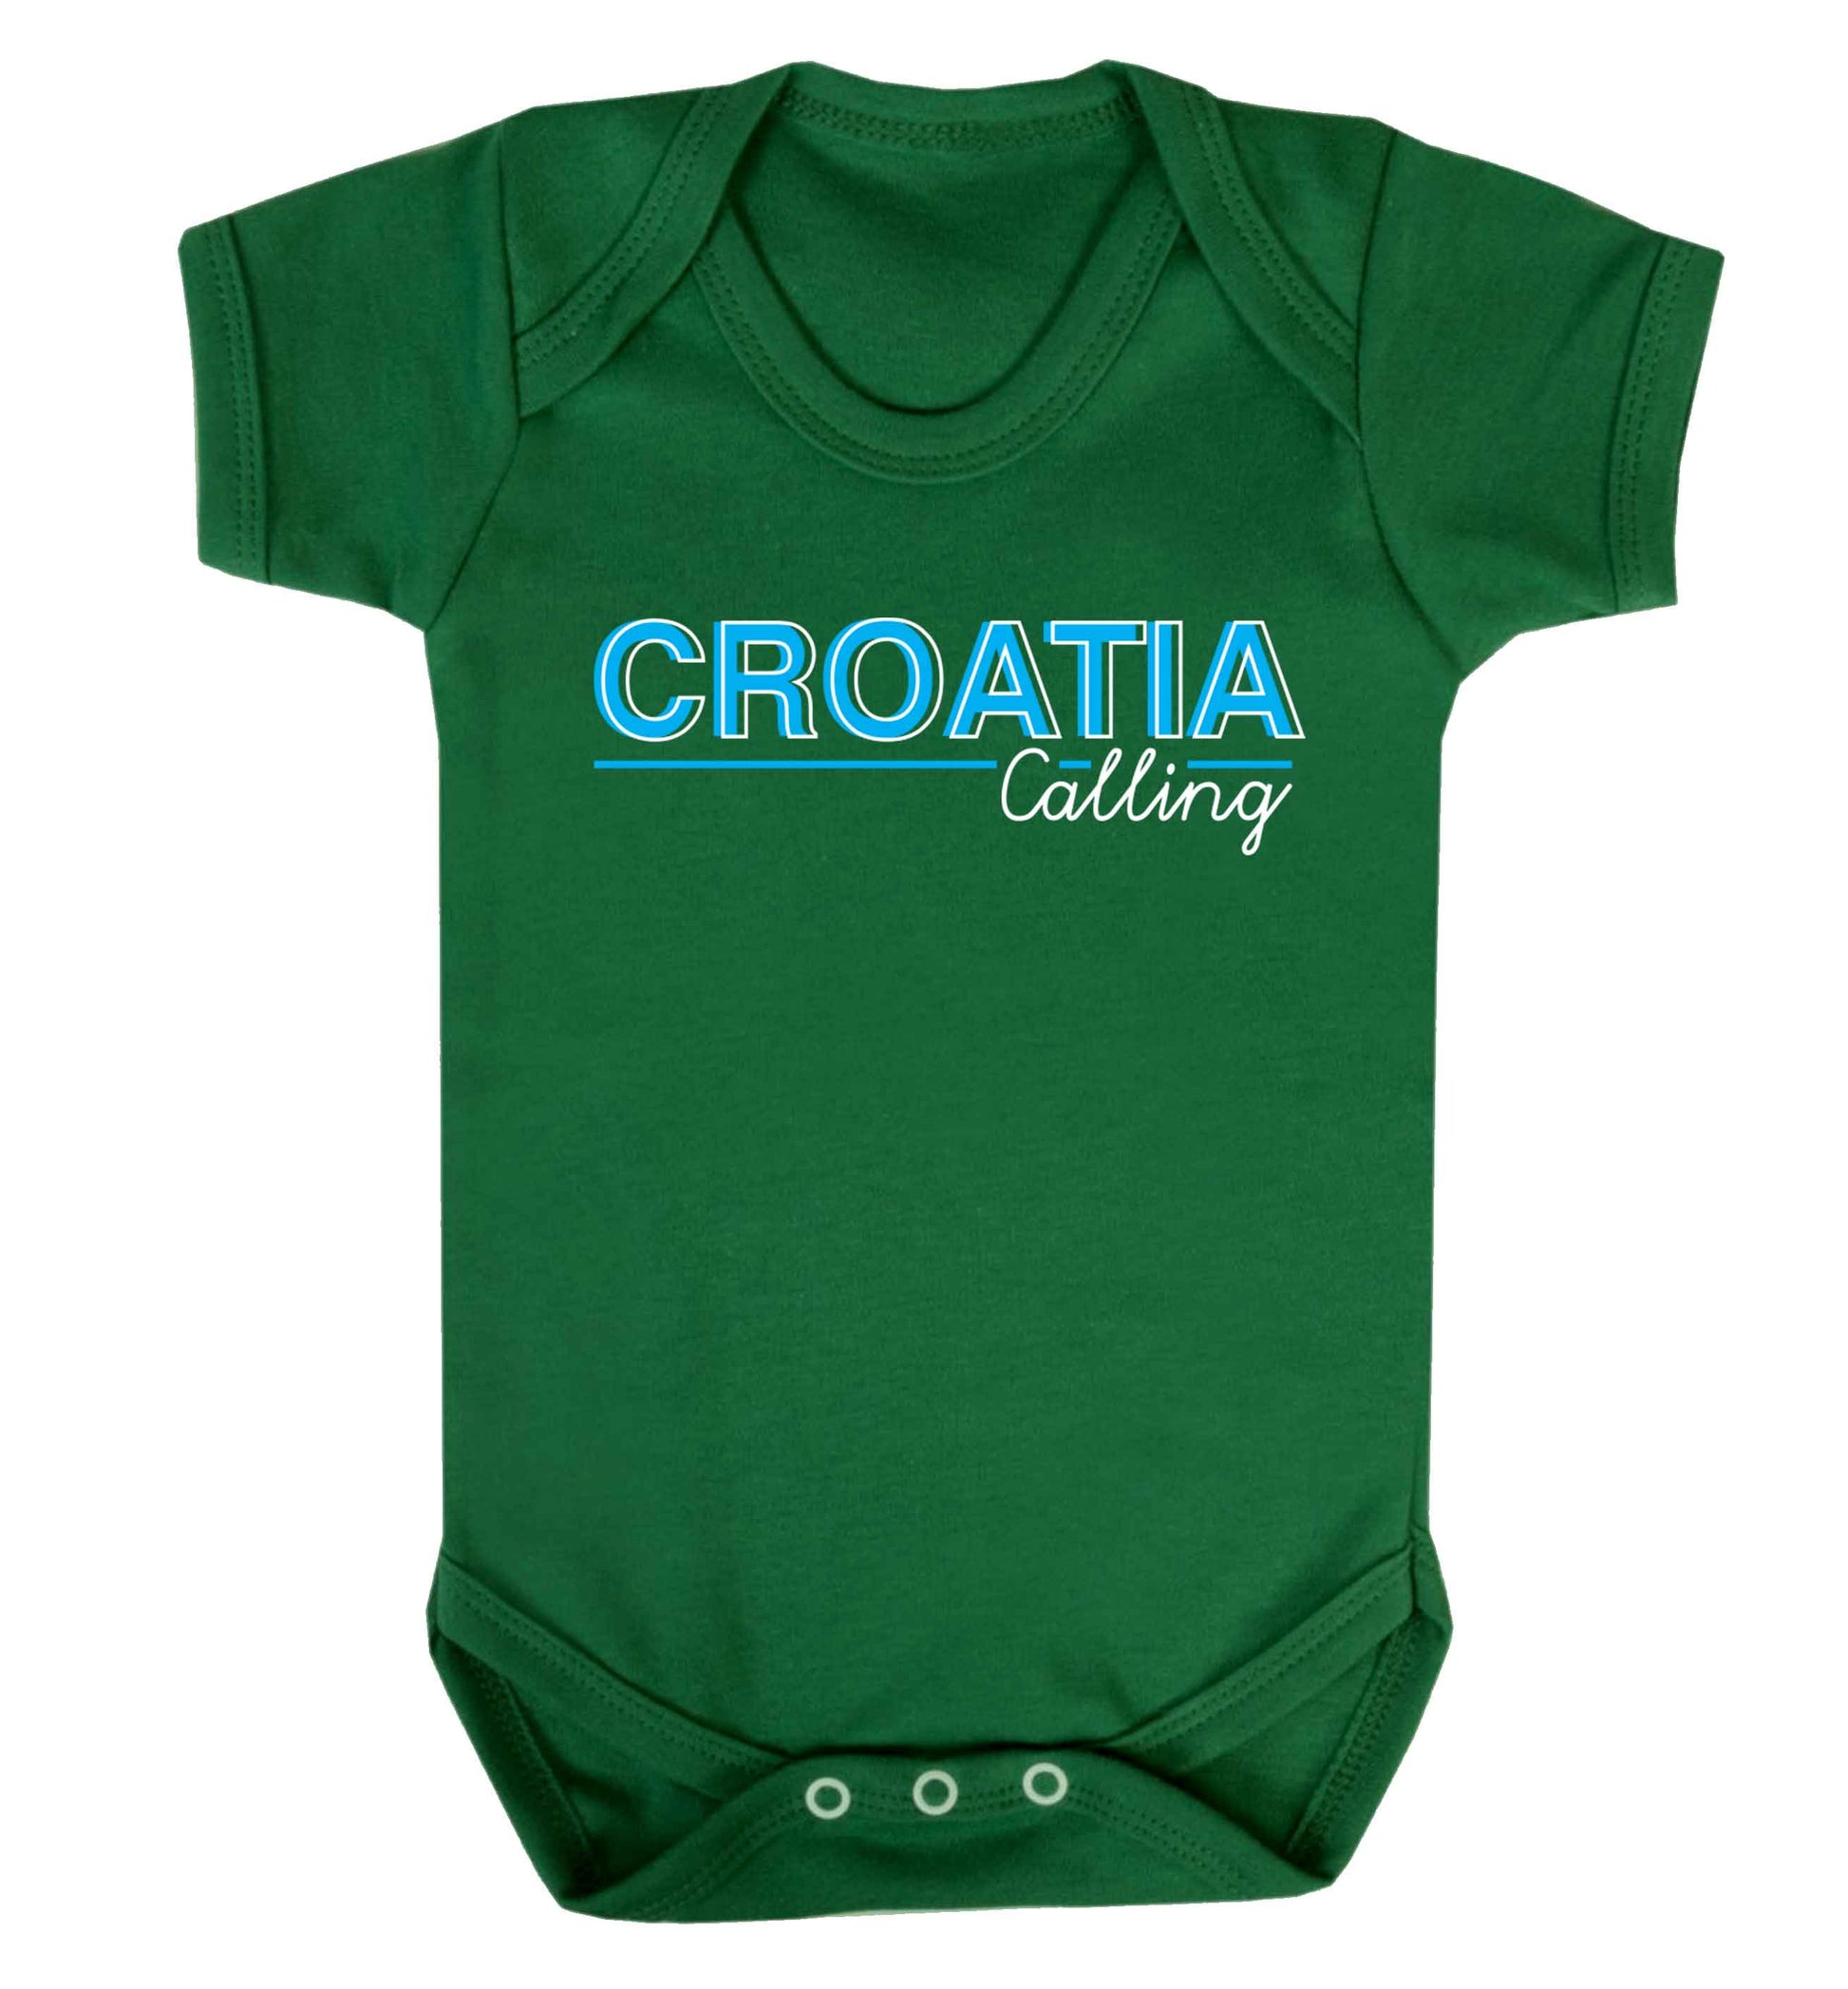 Croatia calling Baby Vest green 18-24 months